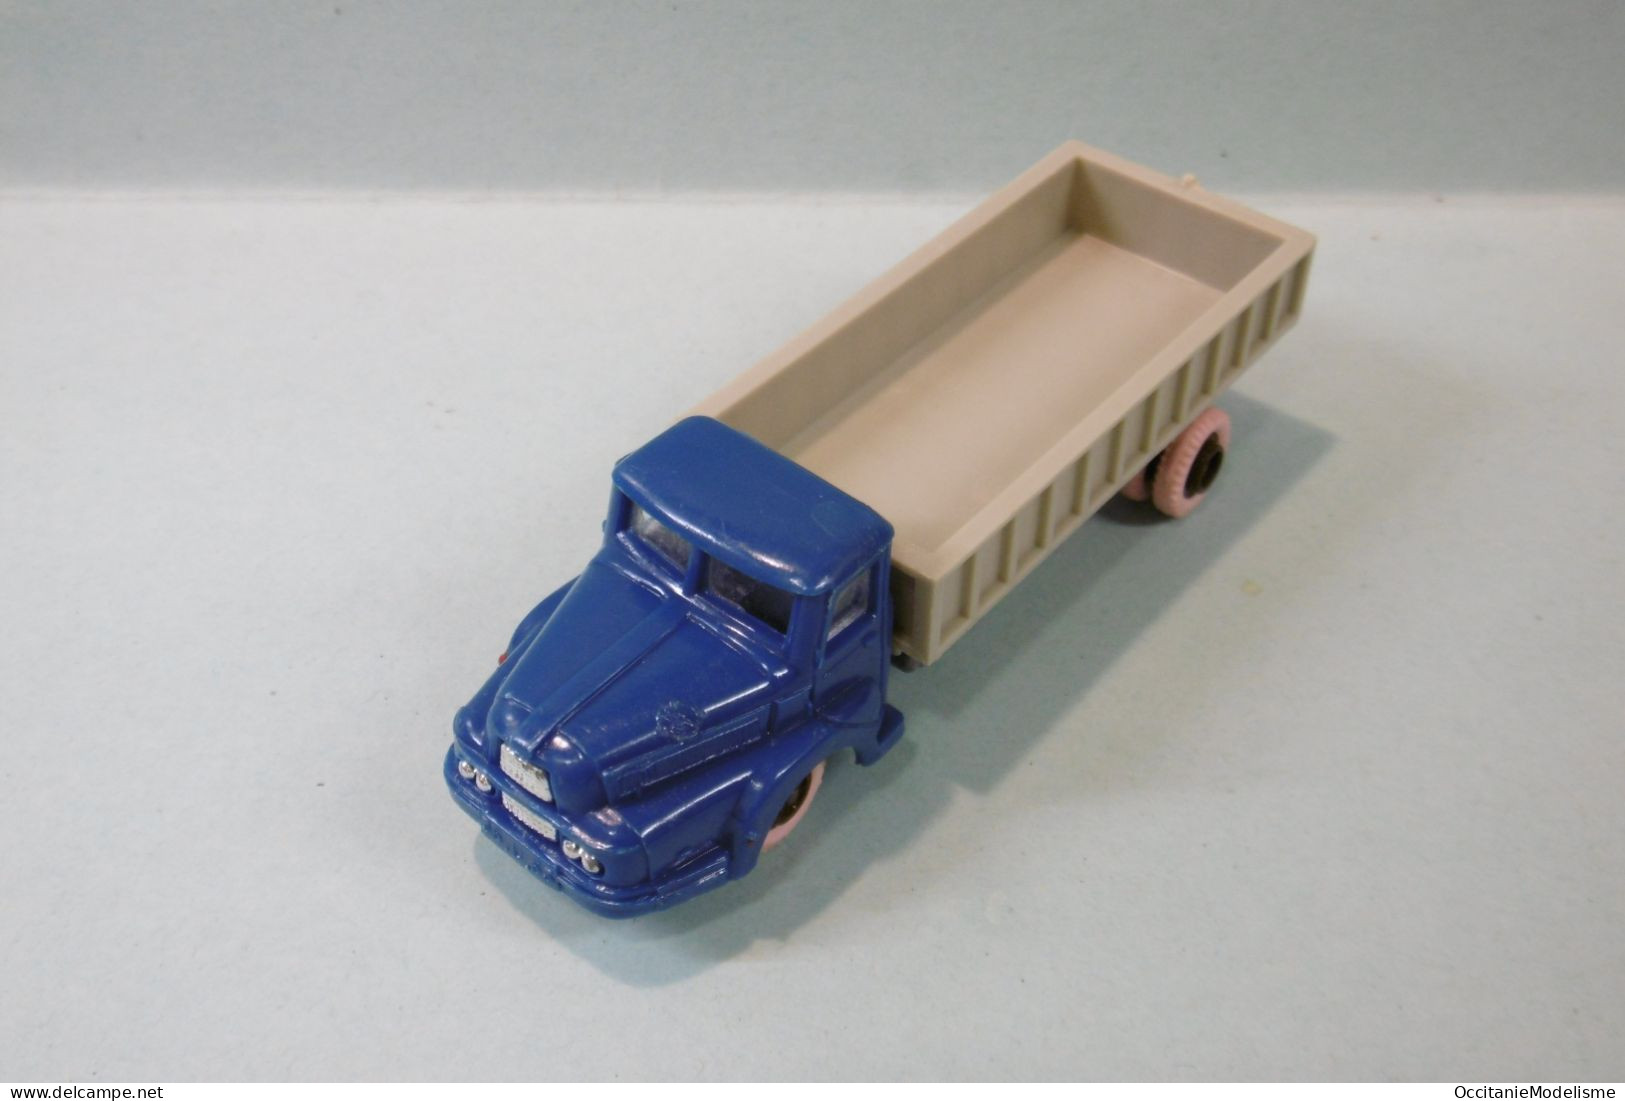 Clé - Camion UNIC IZOARD bleu benne grise HO 1/87 1/90